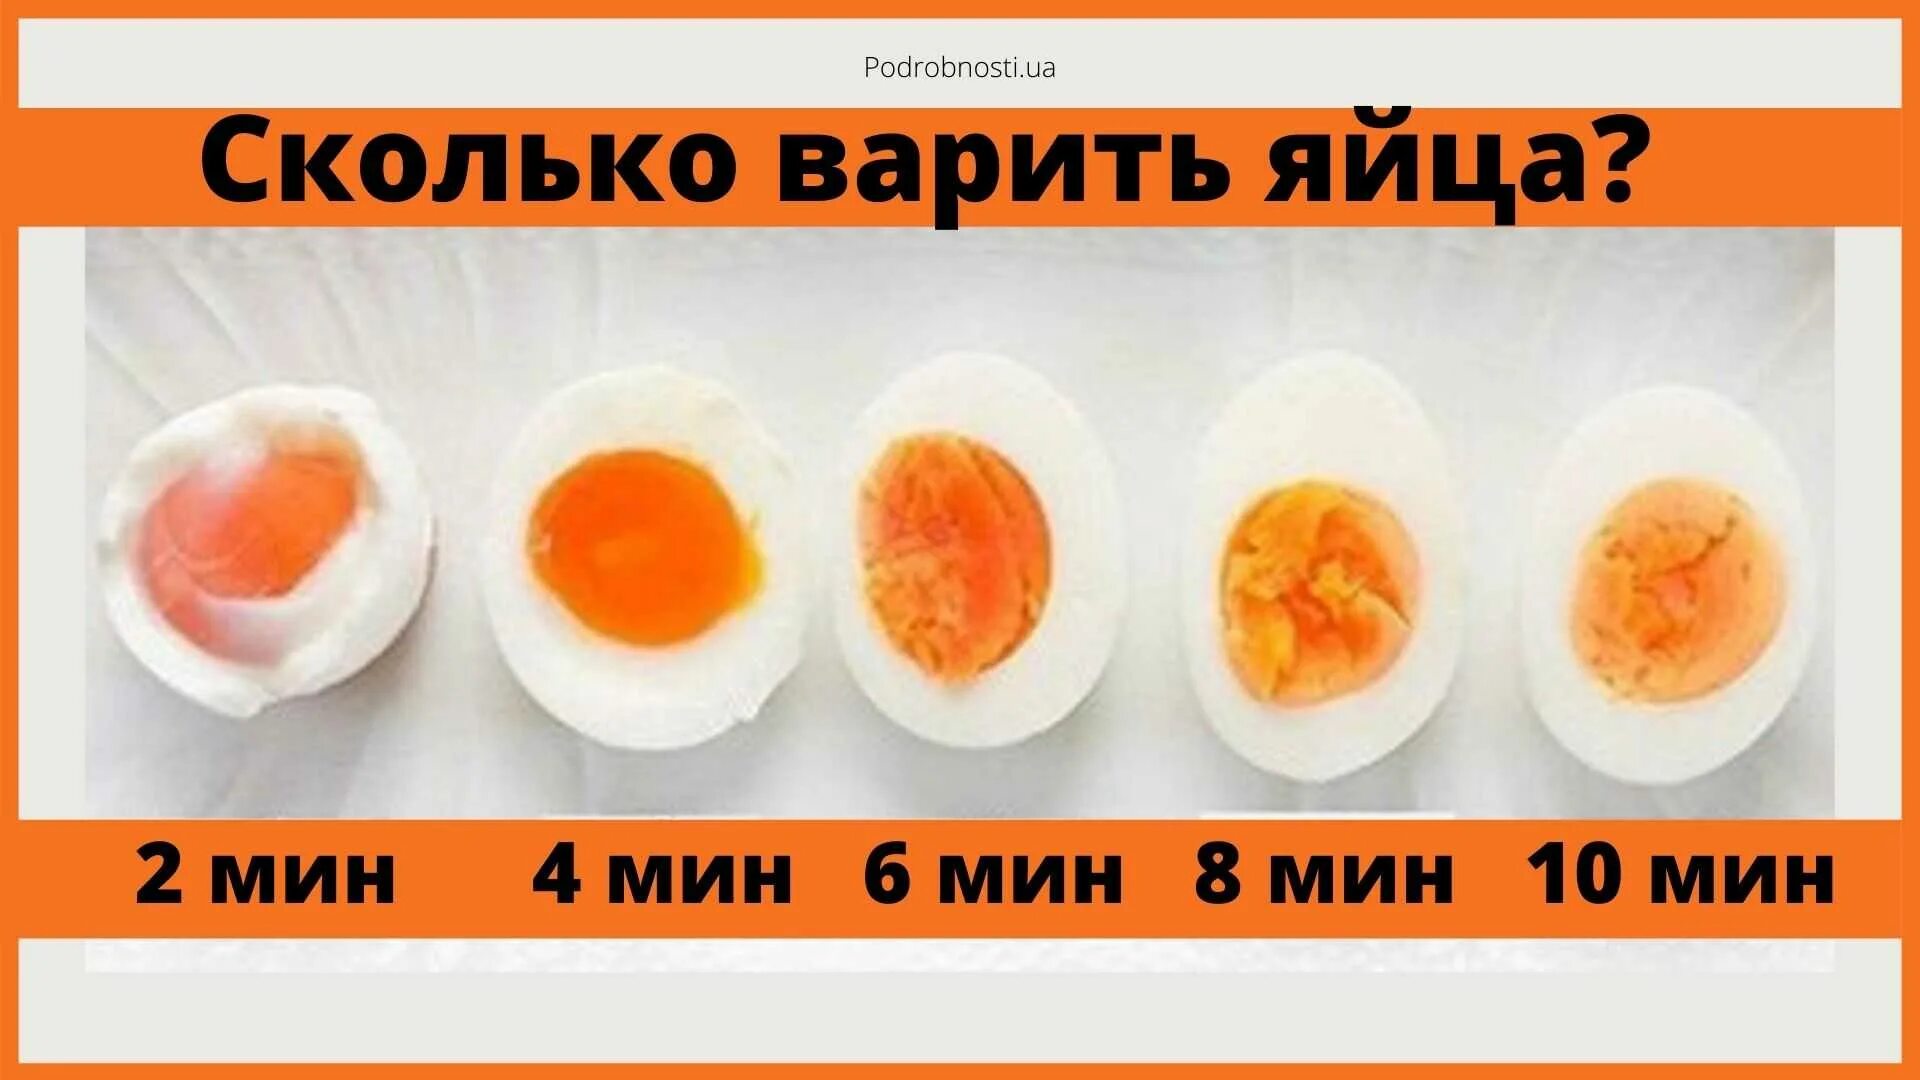 Сколько варится 1. Сколько варить яйца. Сколько варить чйцо в смятку. Сколько варить яицо всмятку. Сколько варить яйца в смятуу.